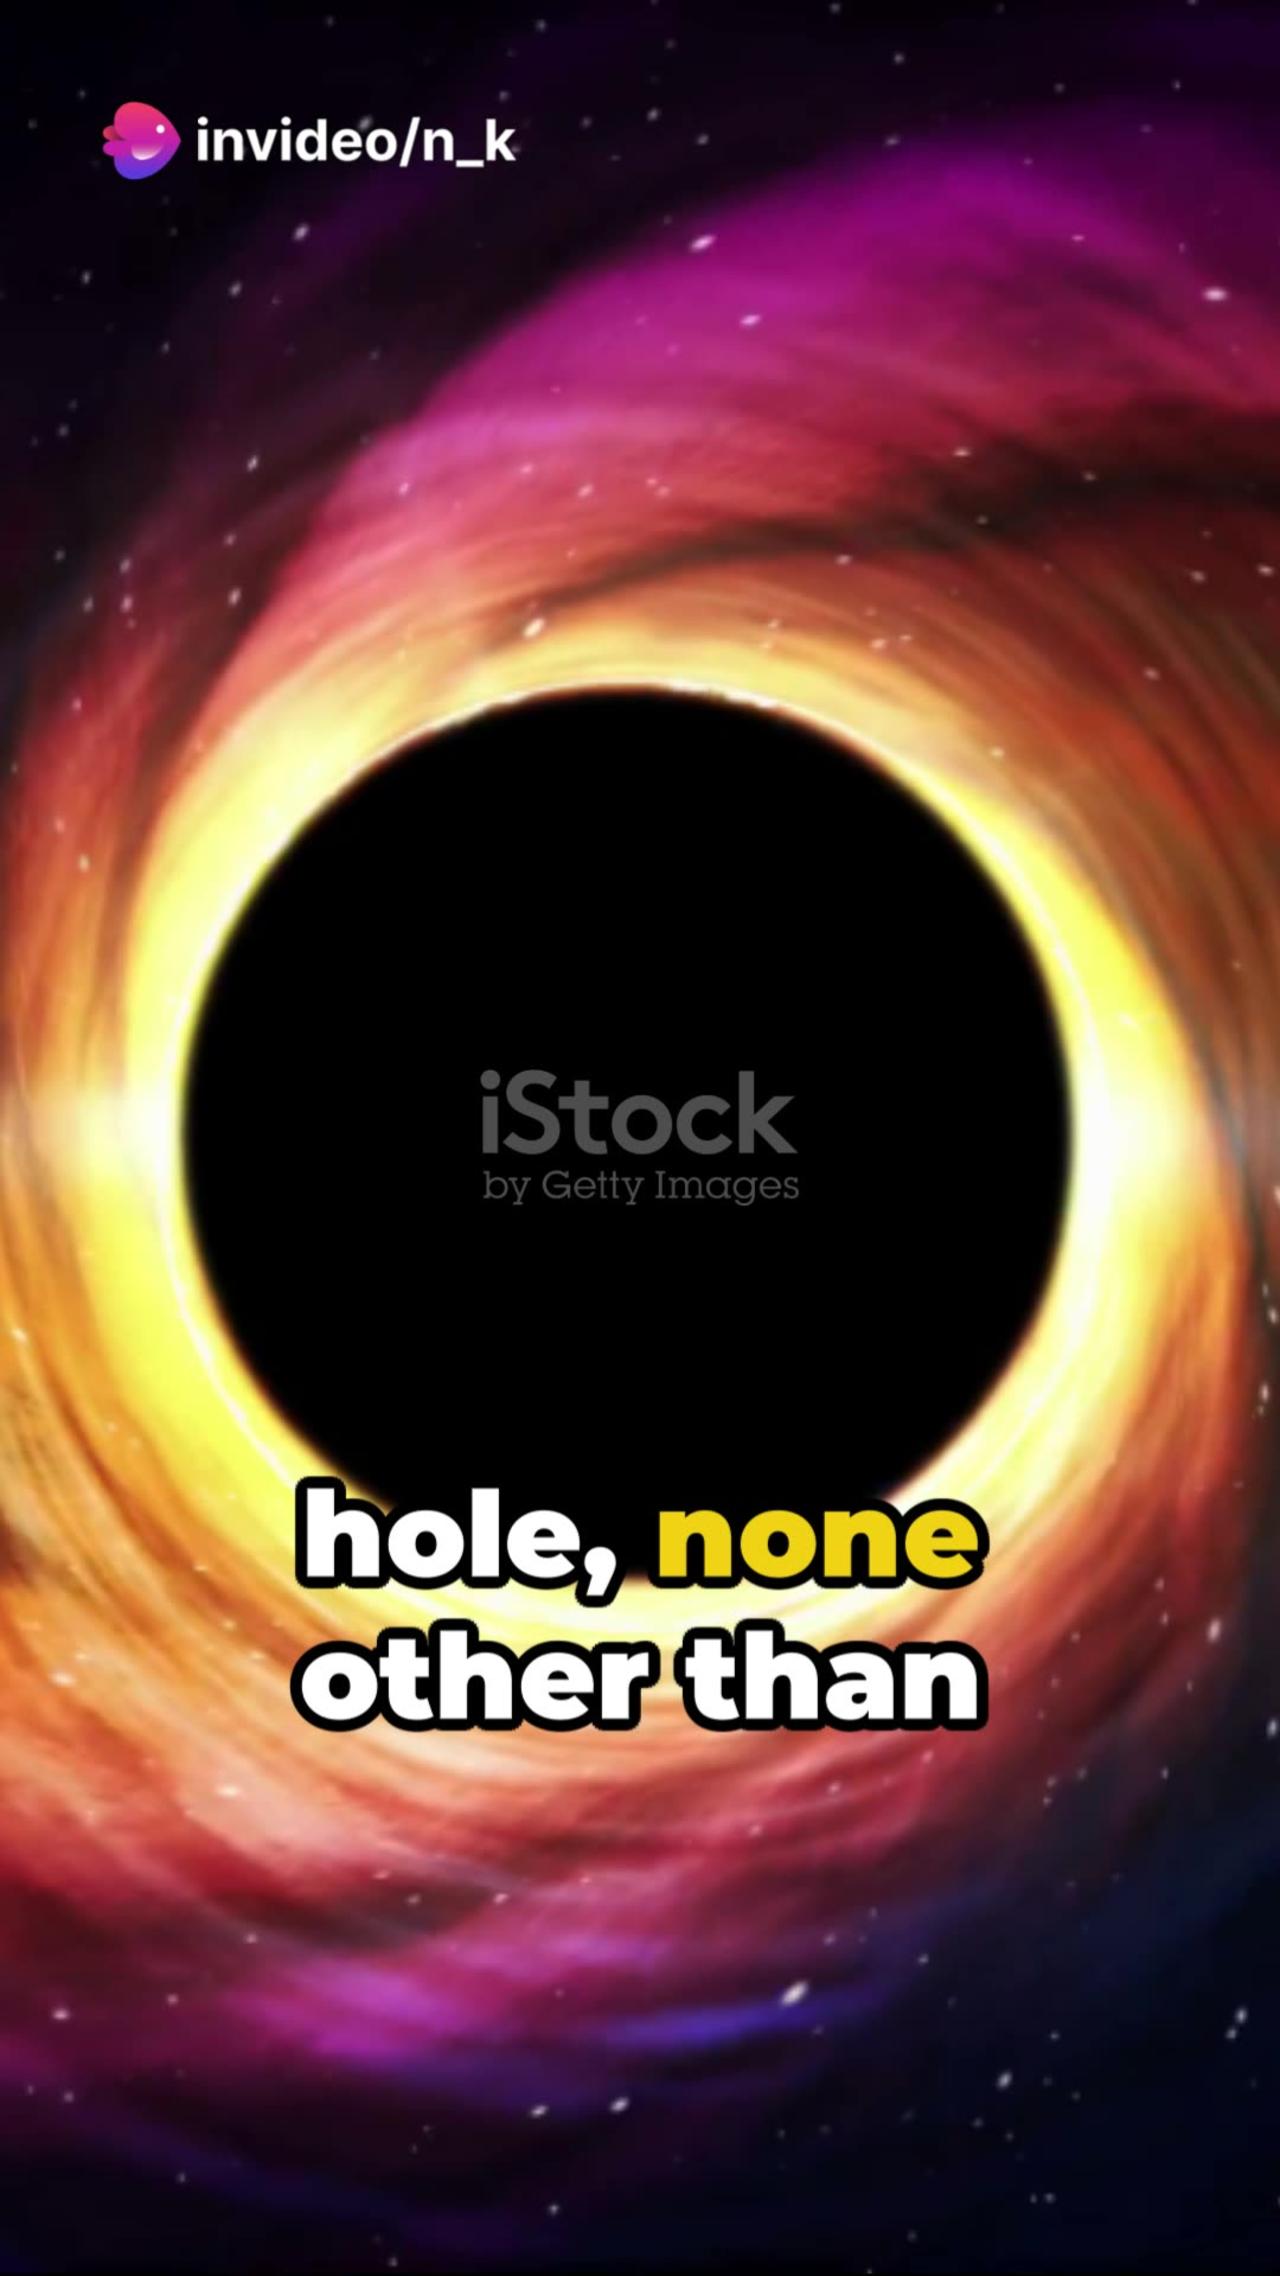 Sagittarius A - The Supermassive Black Hole